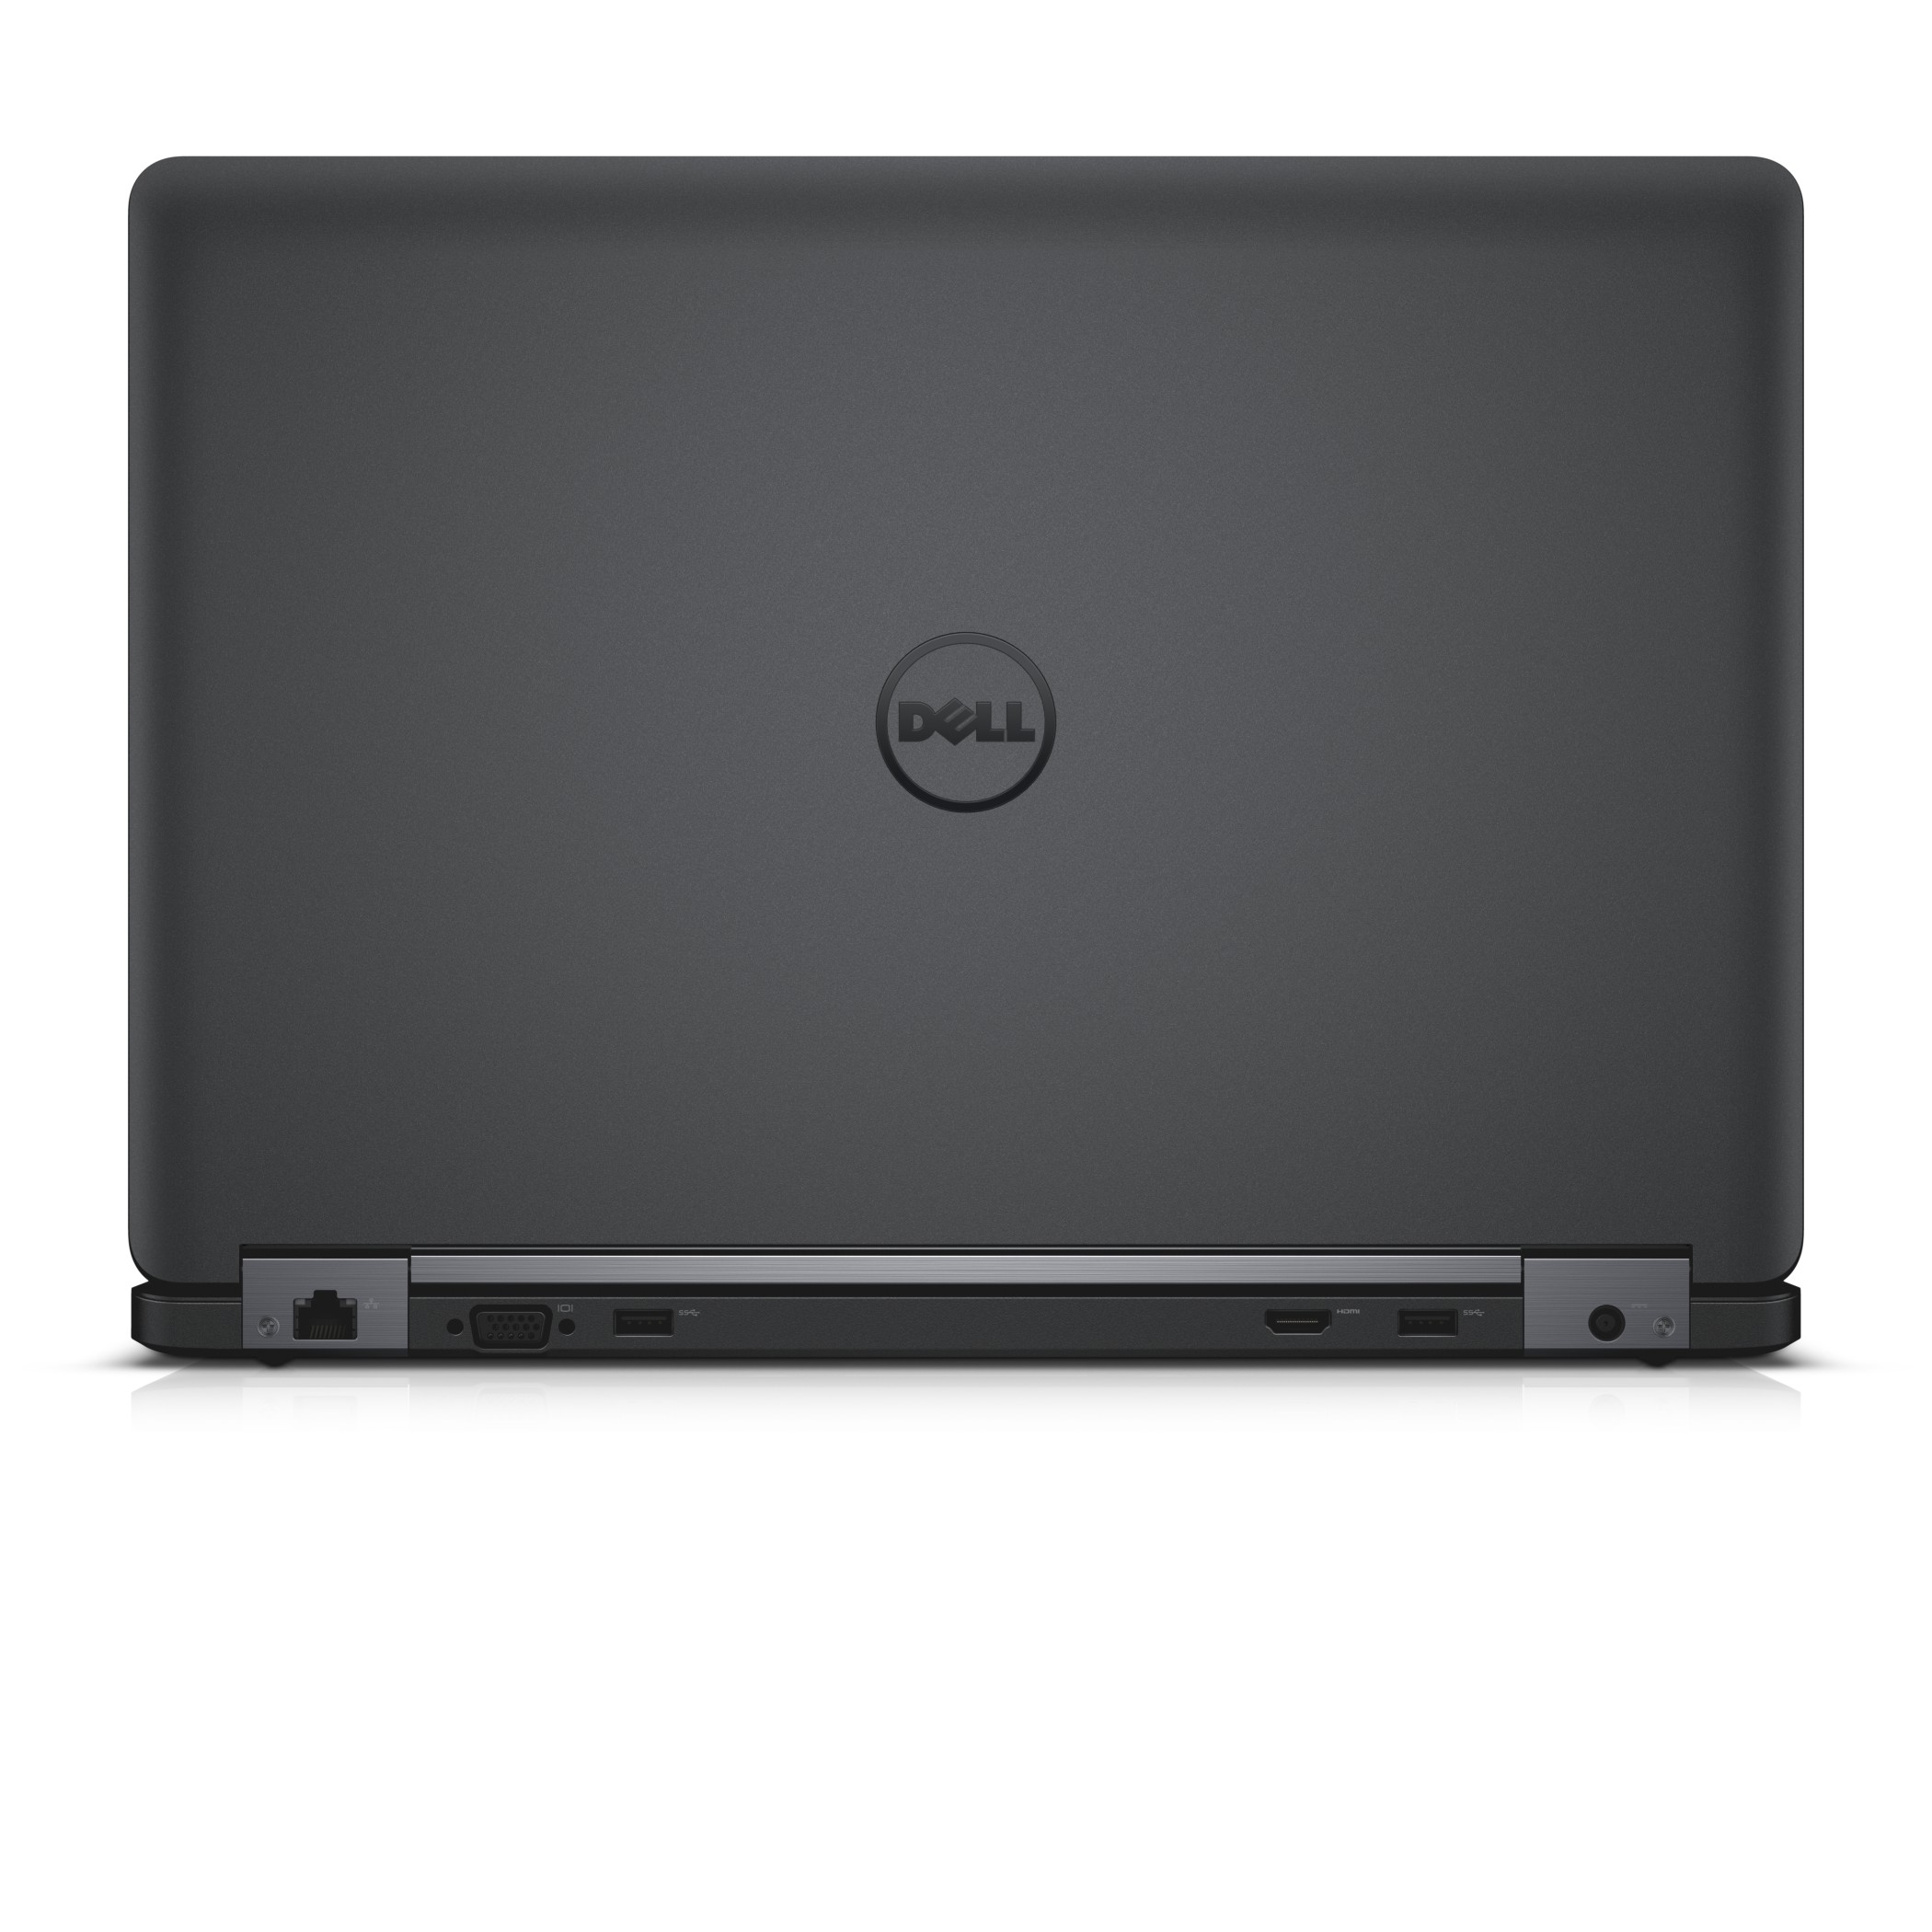 Dell Latitude 15 5000 Series (Model E5550) touch notebook computer, codename Houston.